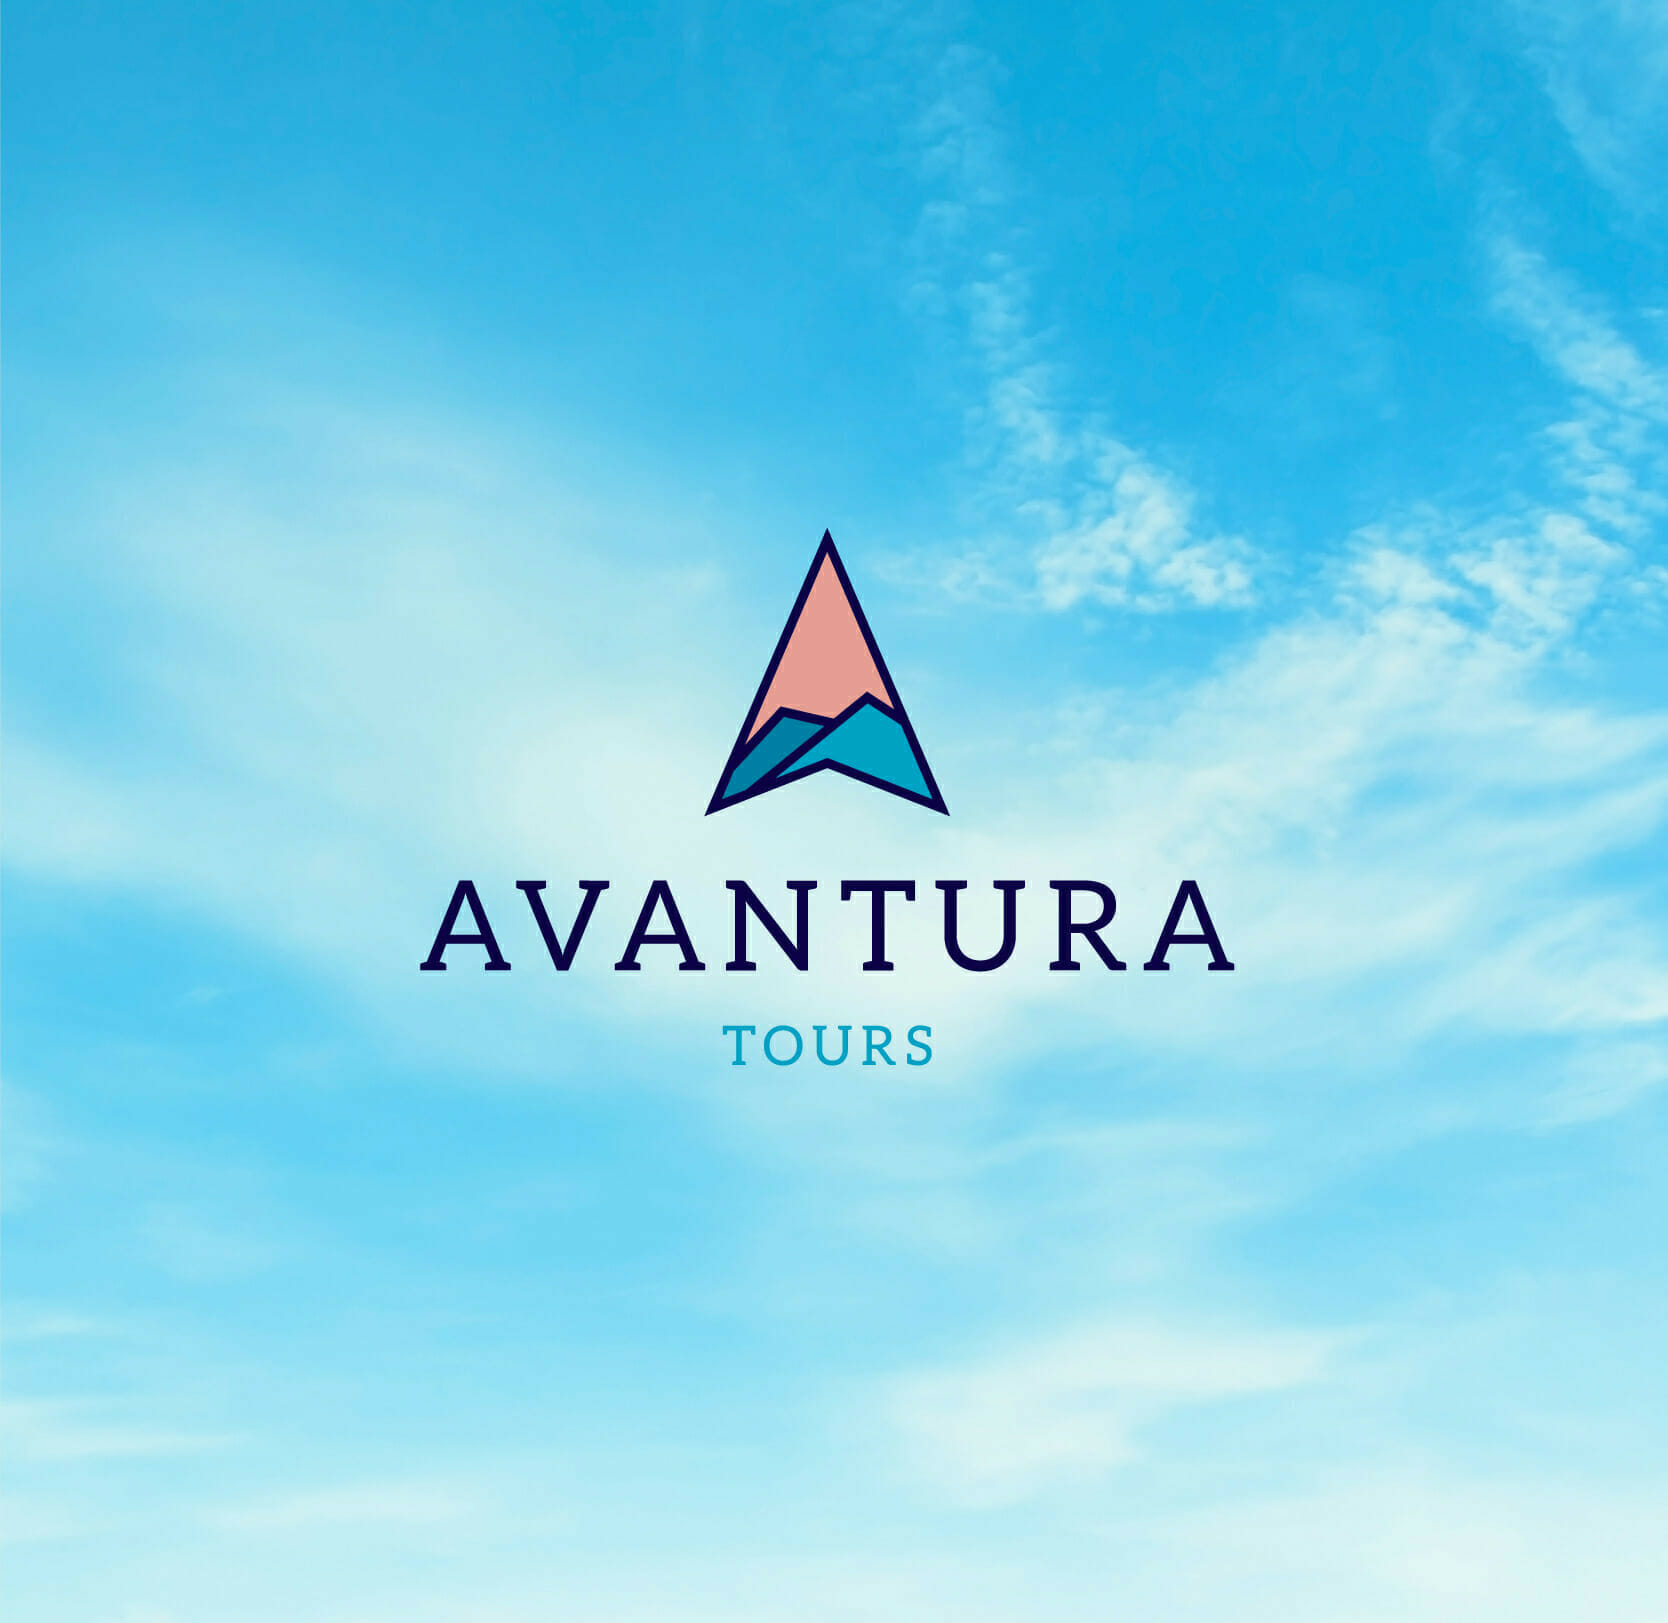 avantura tours logo graphic design by bounce